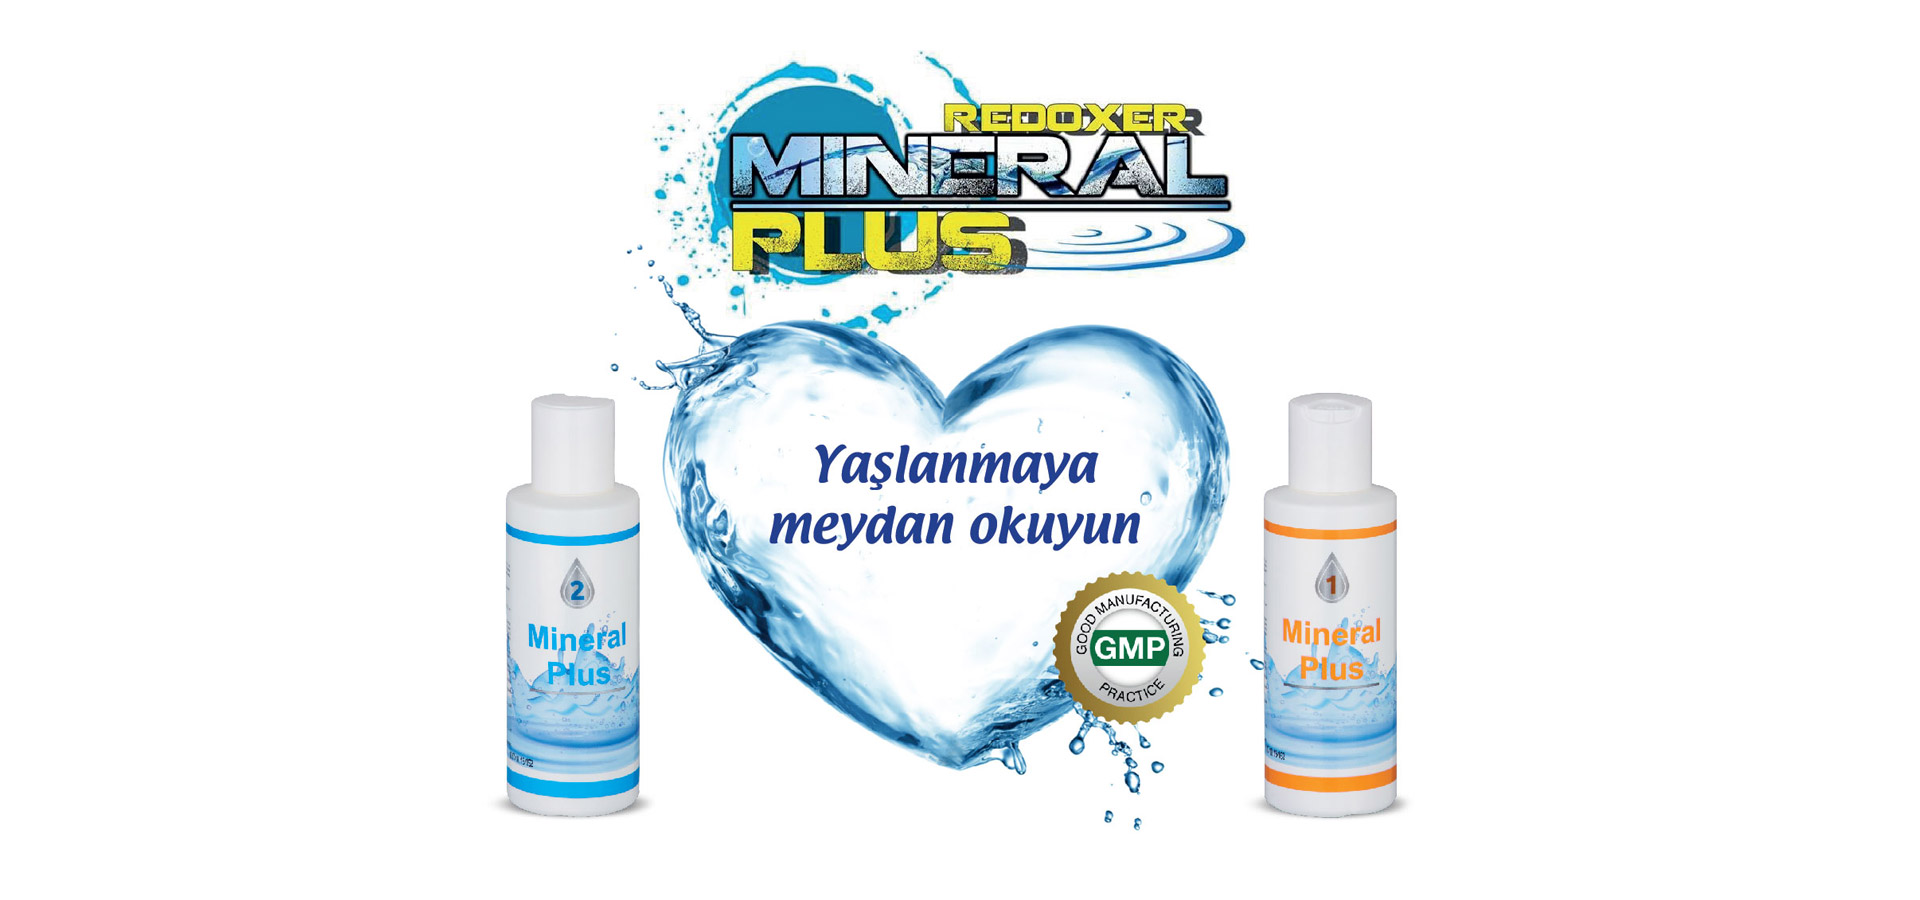 Rodexer Mineral Plus 2 ve 1 ile Yaşlanmaya Meydan Okuyun